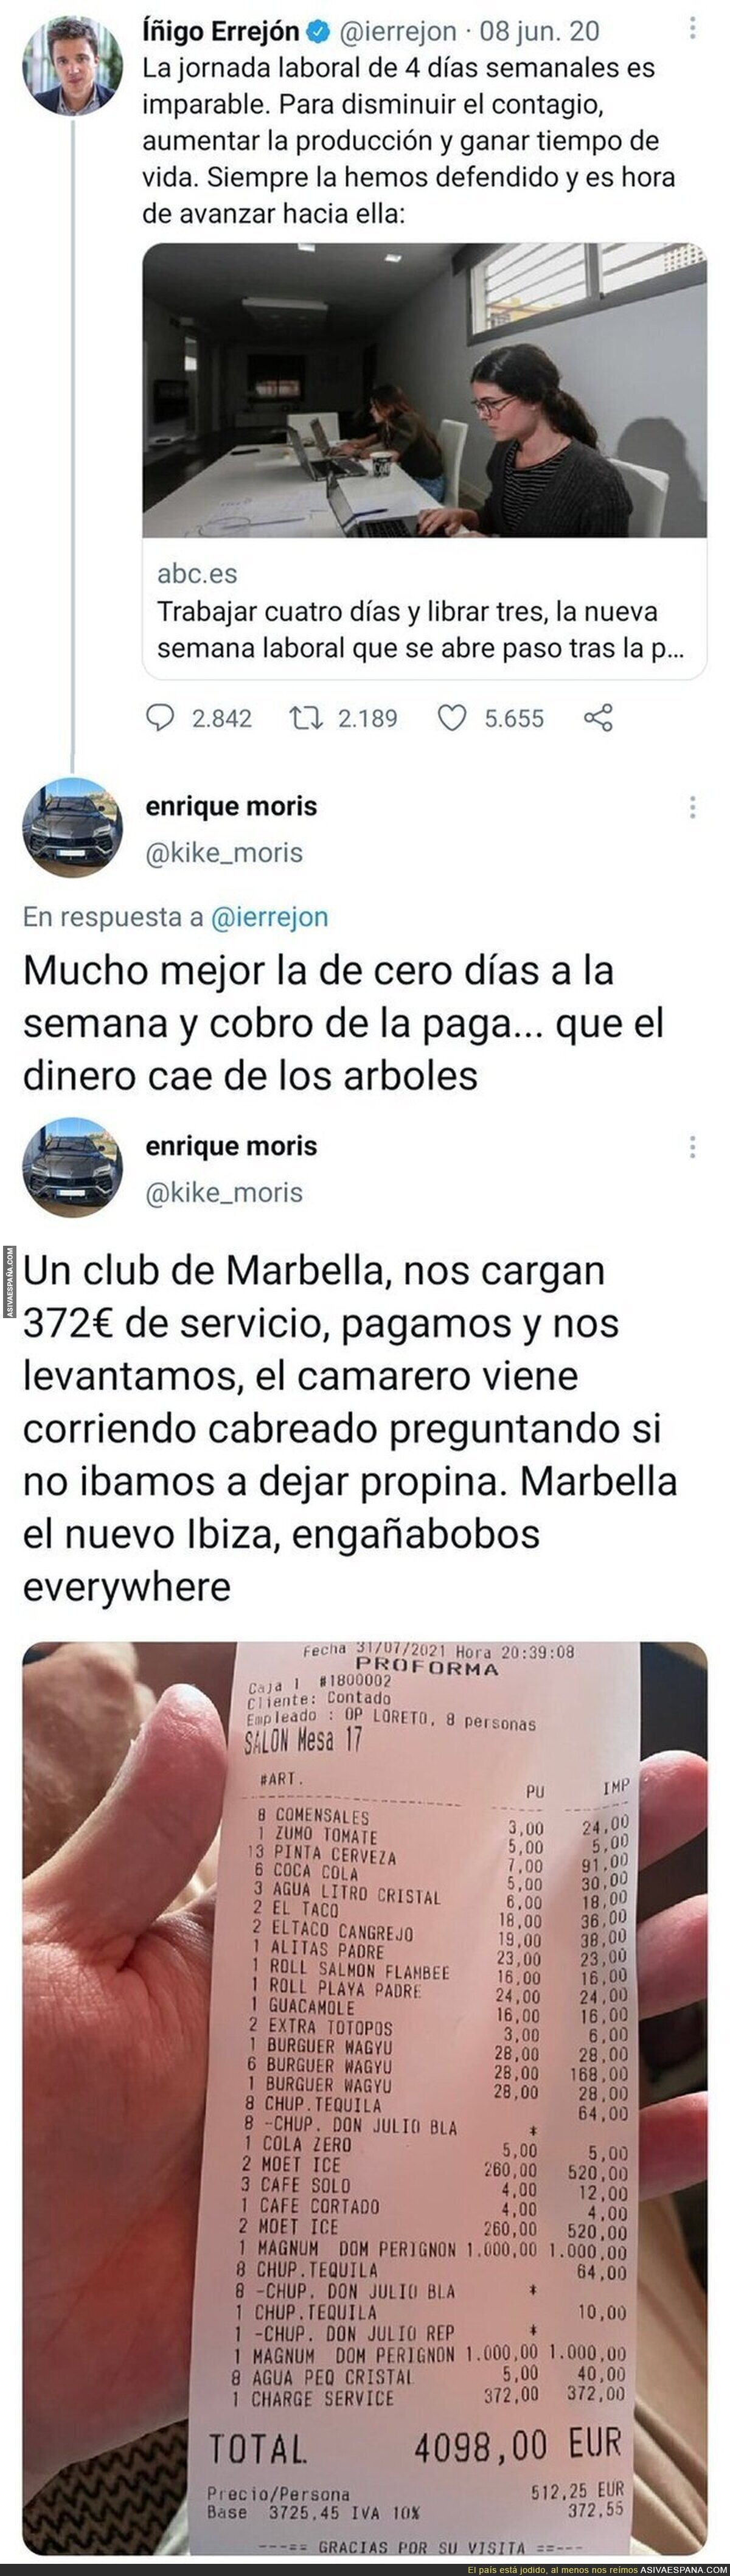 La persona que subió un ticket de 4000€ de un bar de Marbella tiene un tuit del pasado que le ha dejado totalmente retratado